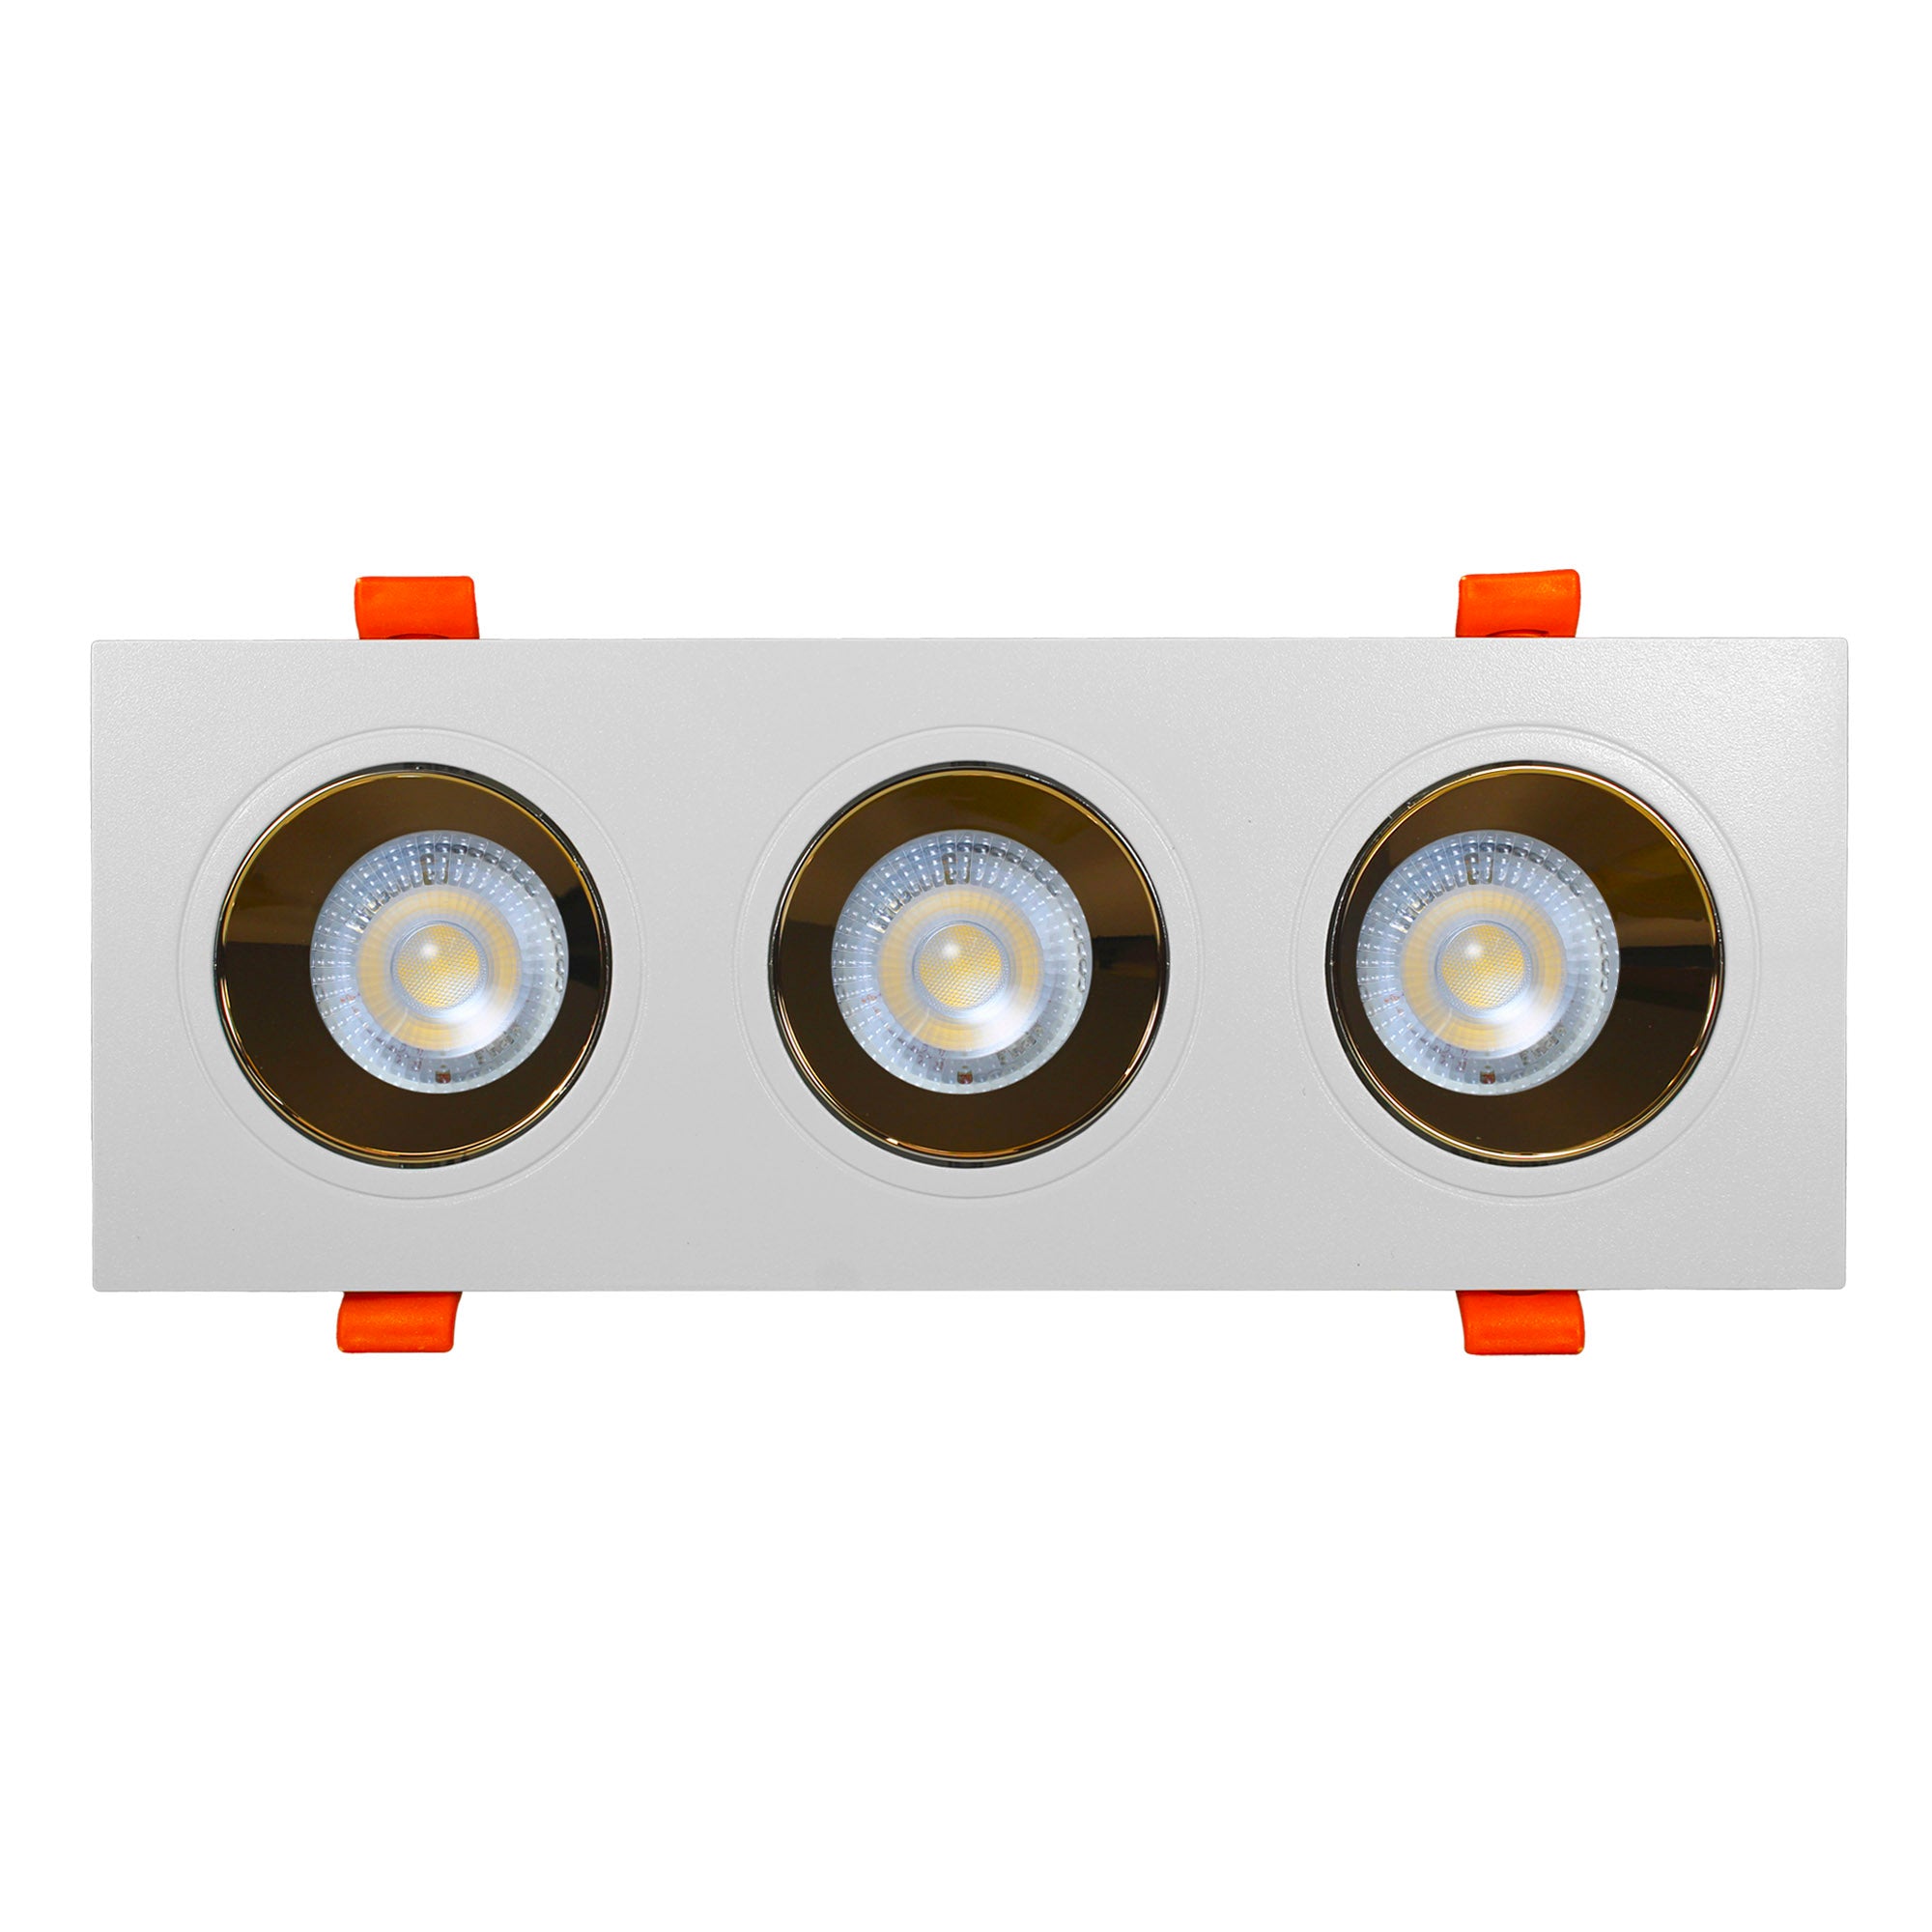 Luminaria de Empotrar en Techo Cuadrada downlight dirigible, Modelo TL-2914 Illux